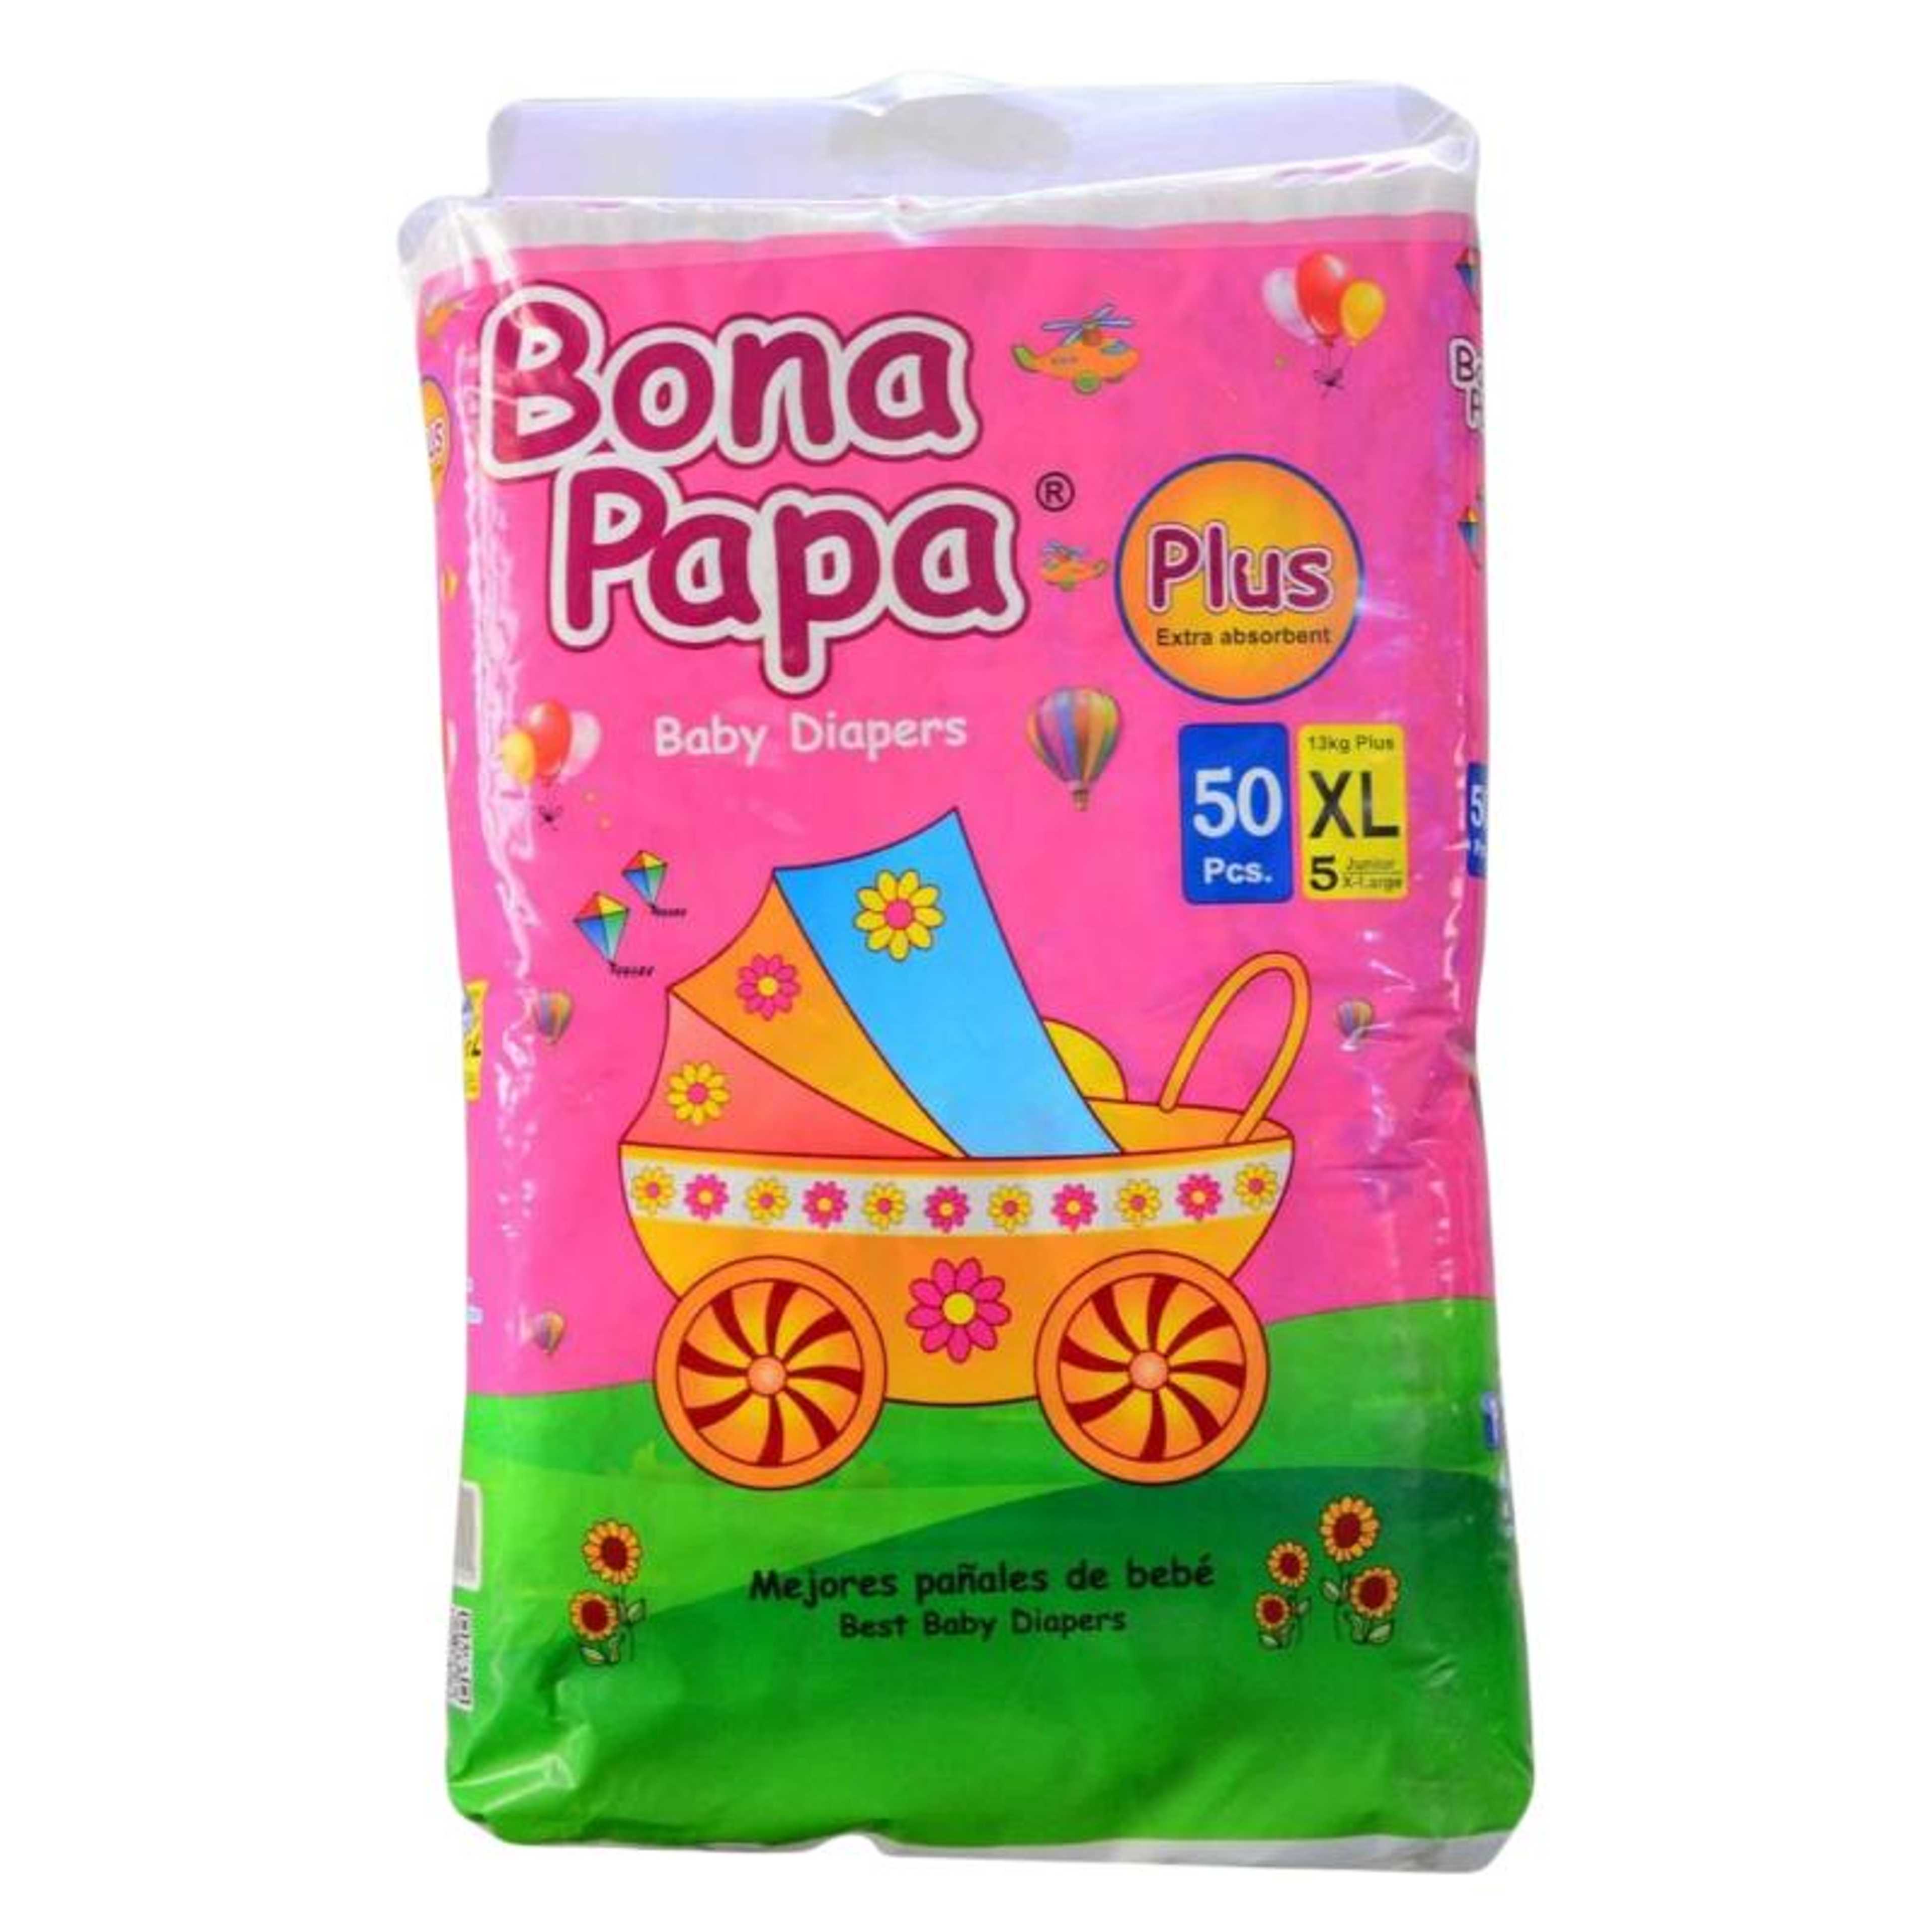 Bona Papa Plus Baby Diapers Xl Size 5 - 50Pcs